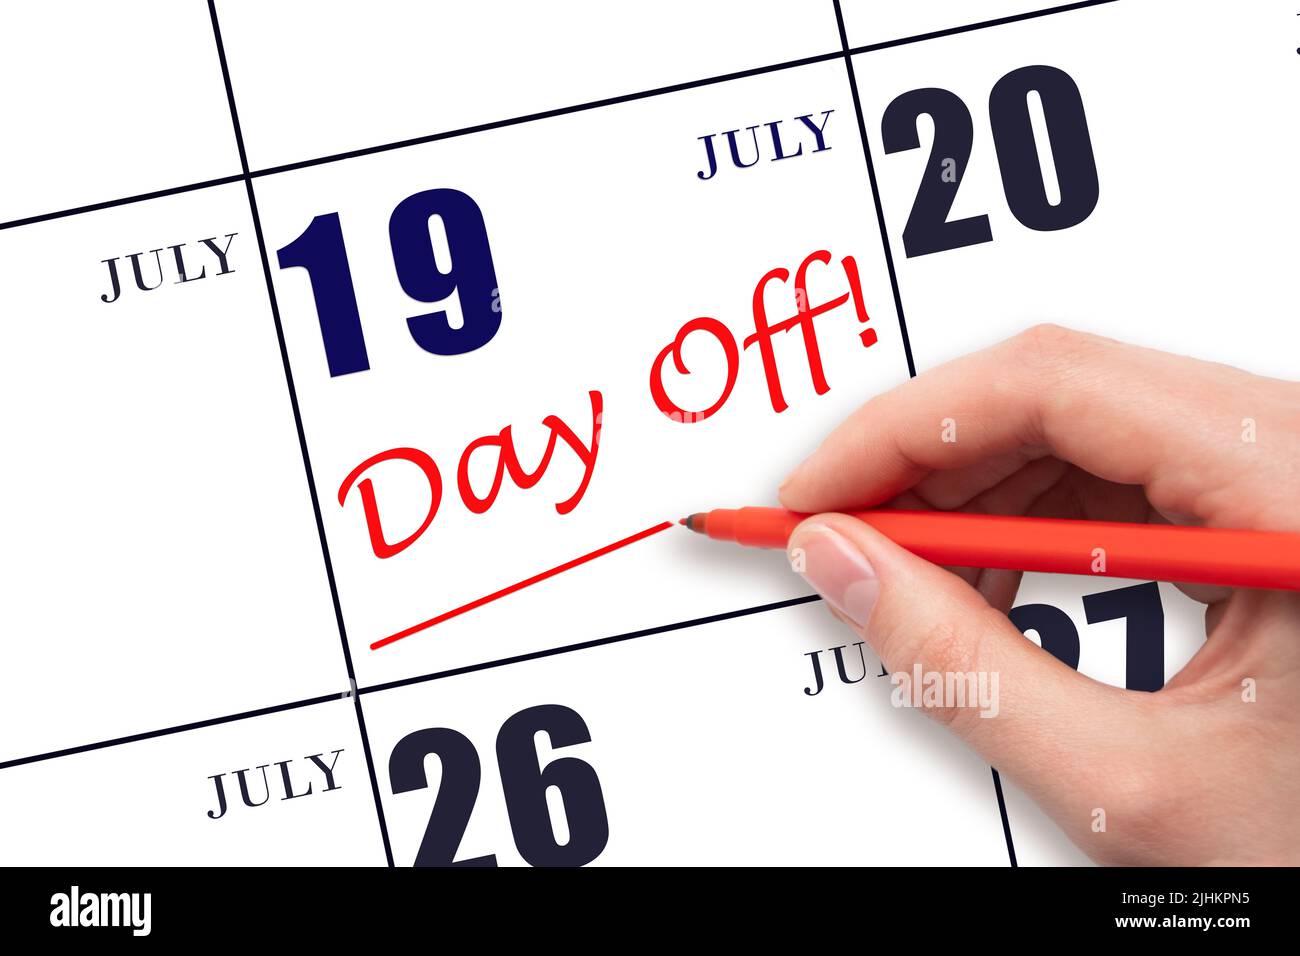 19th luglio. Scrivere a mano il testo GIORNO OFF e disegnare una linea sulla data di calendario 19 luglio. Concetto di pianificazione delle vacanze. Mese estivo, giorno dell'anno conc Foto Stock